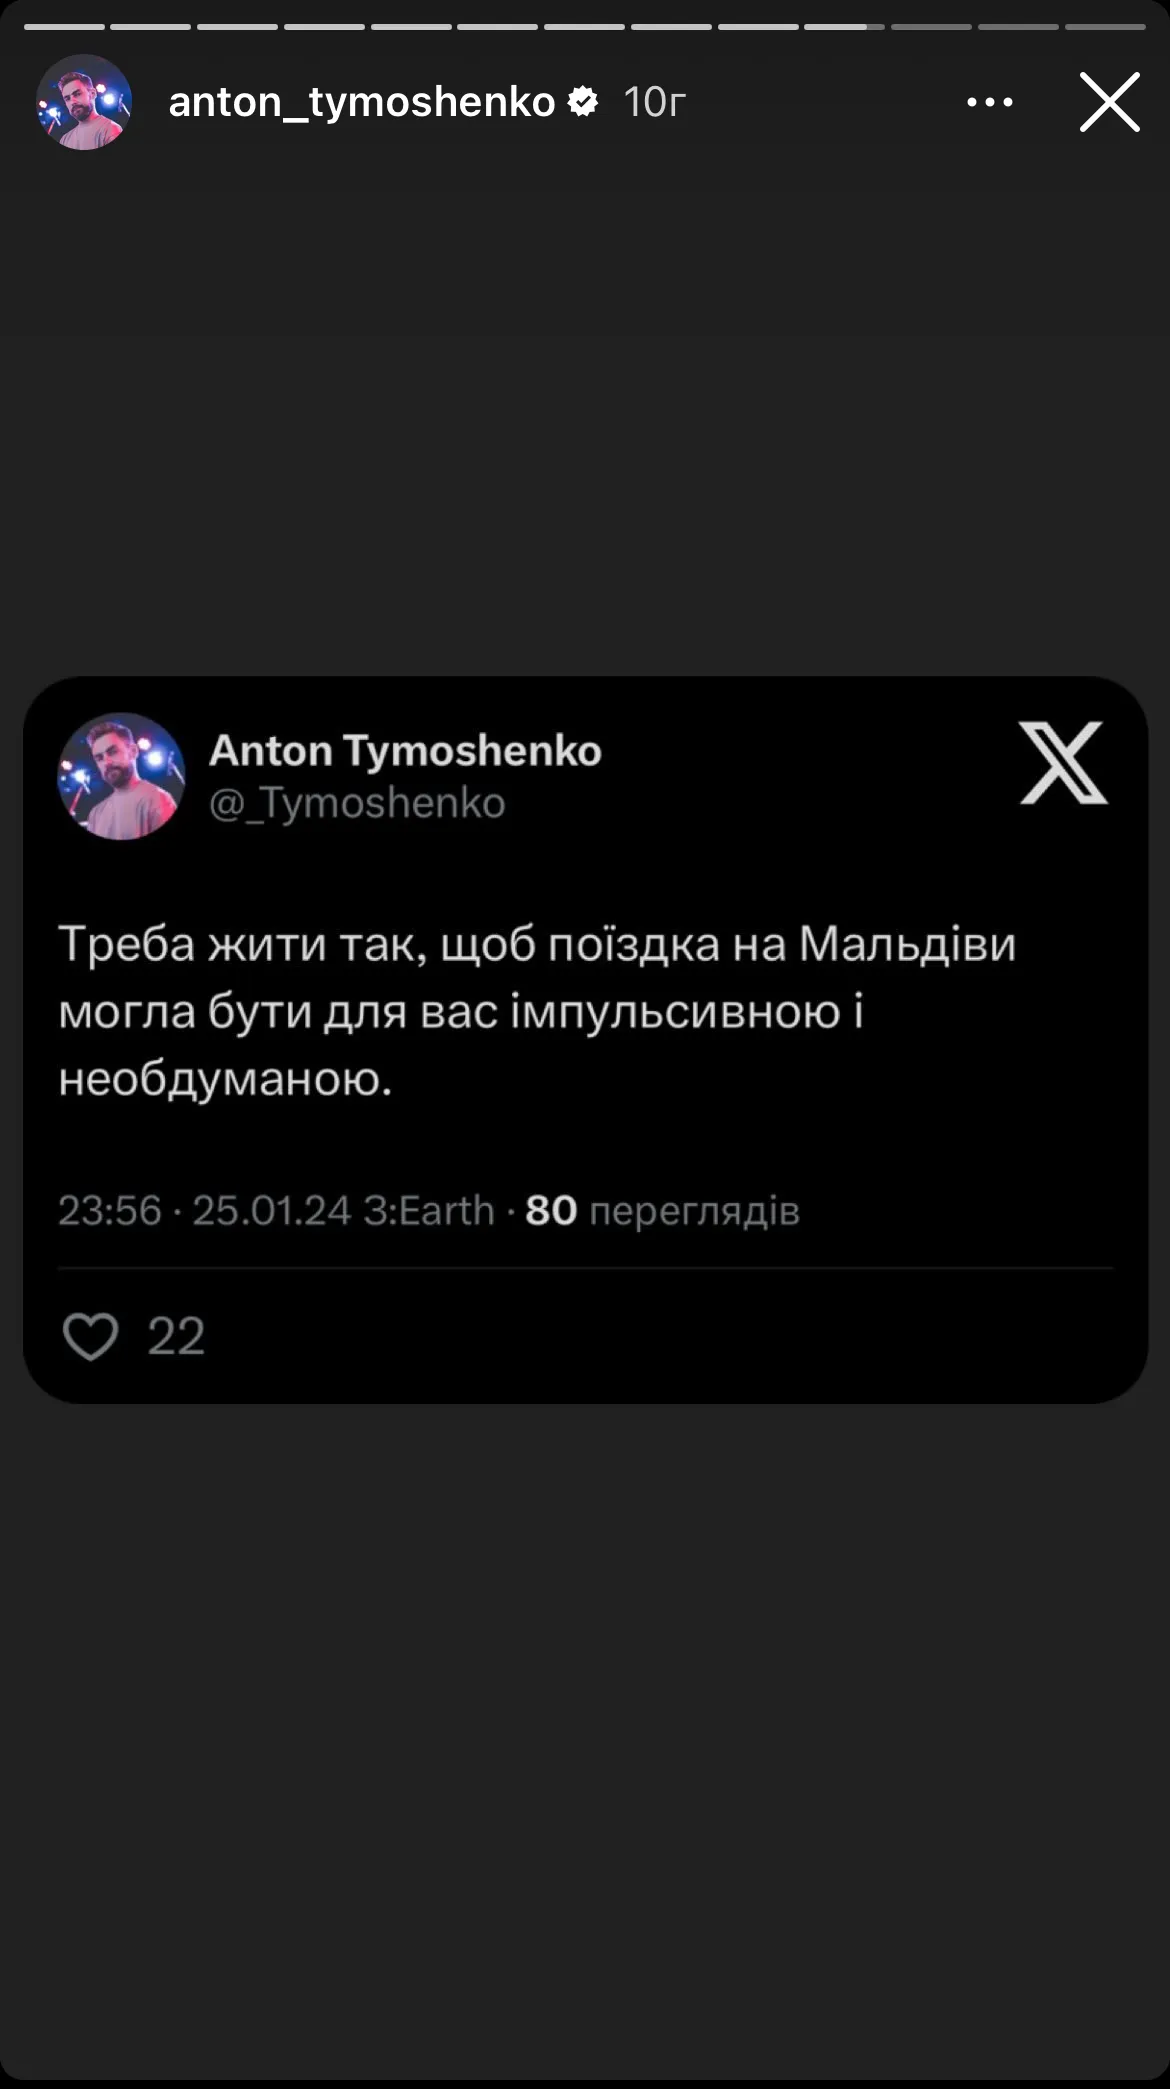 Тимошенко высказался о блогерах